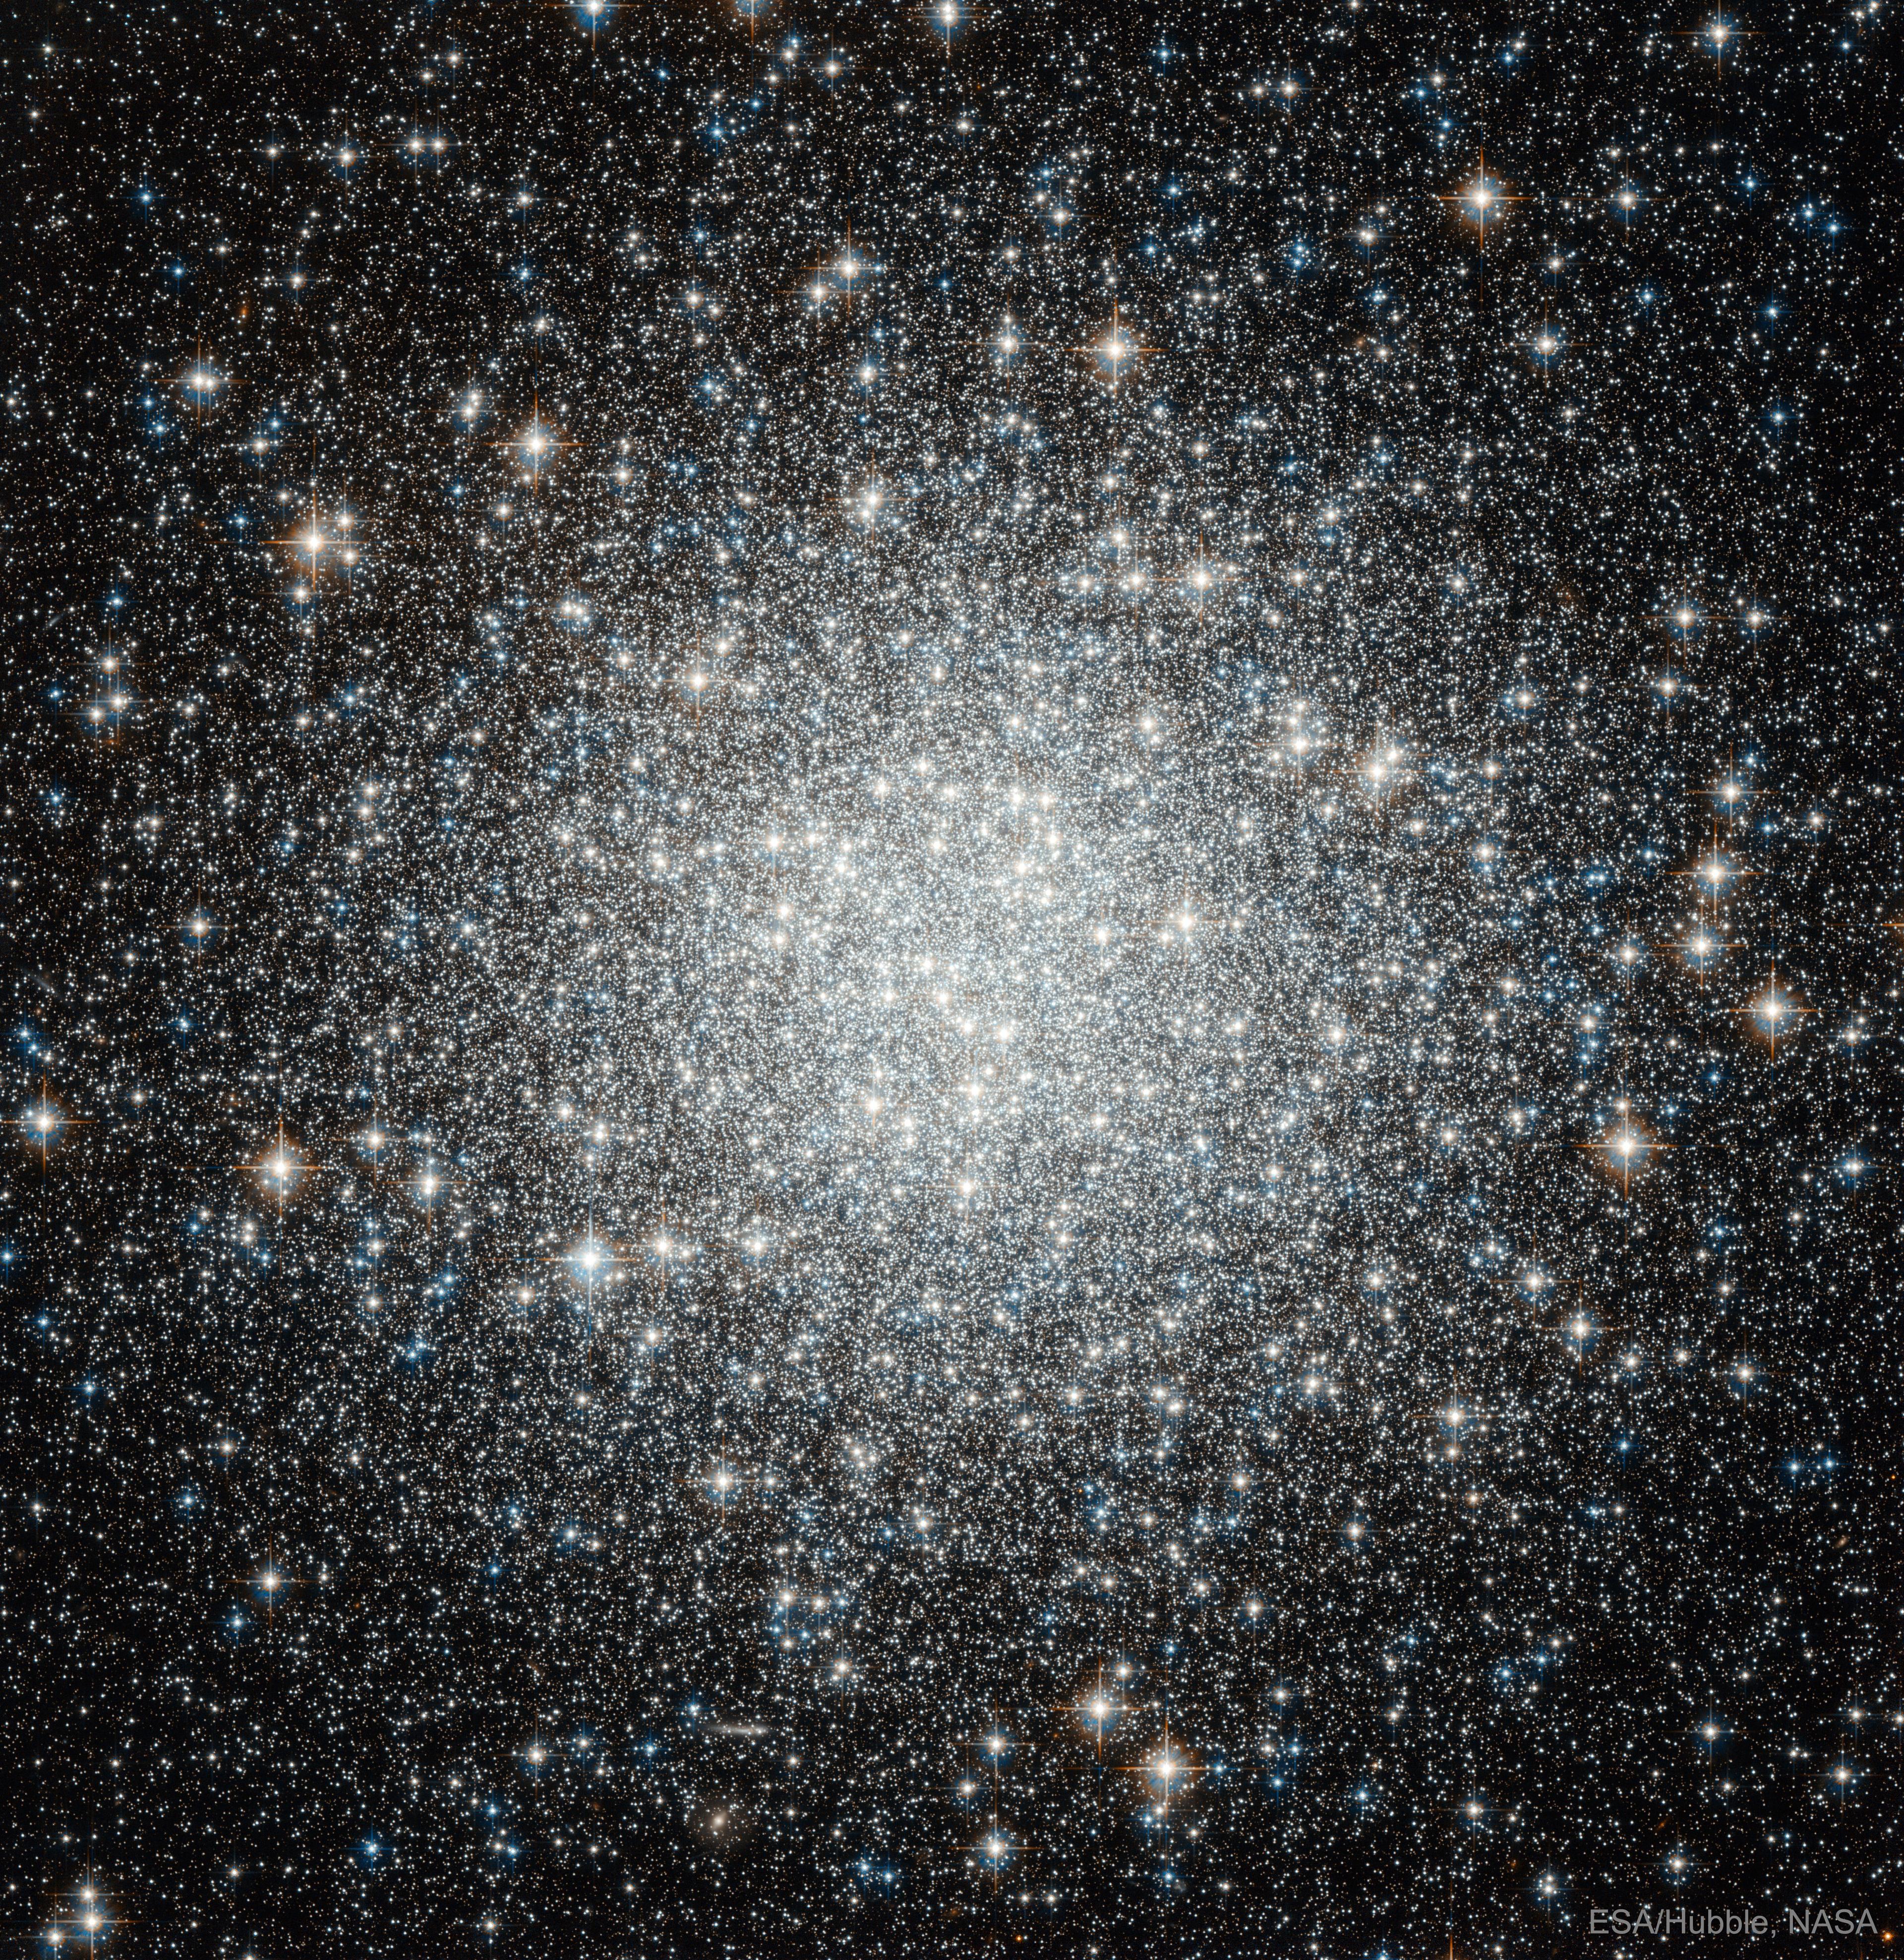 نجوم العنقود المغلق م53 البرّاقة بألوانها البيضاء والزرقاء، والتي تظهر بتركيز كبير في المنتصف يخف تدريجيّاً باتجاه الخارج حيث تتناثر النجوم متباعدة.